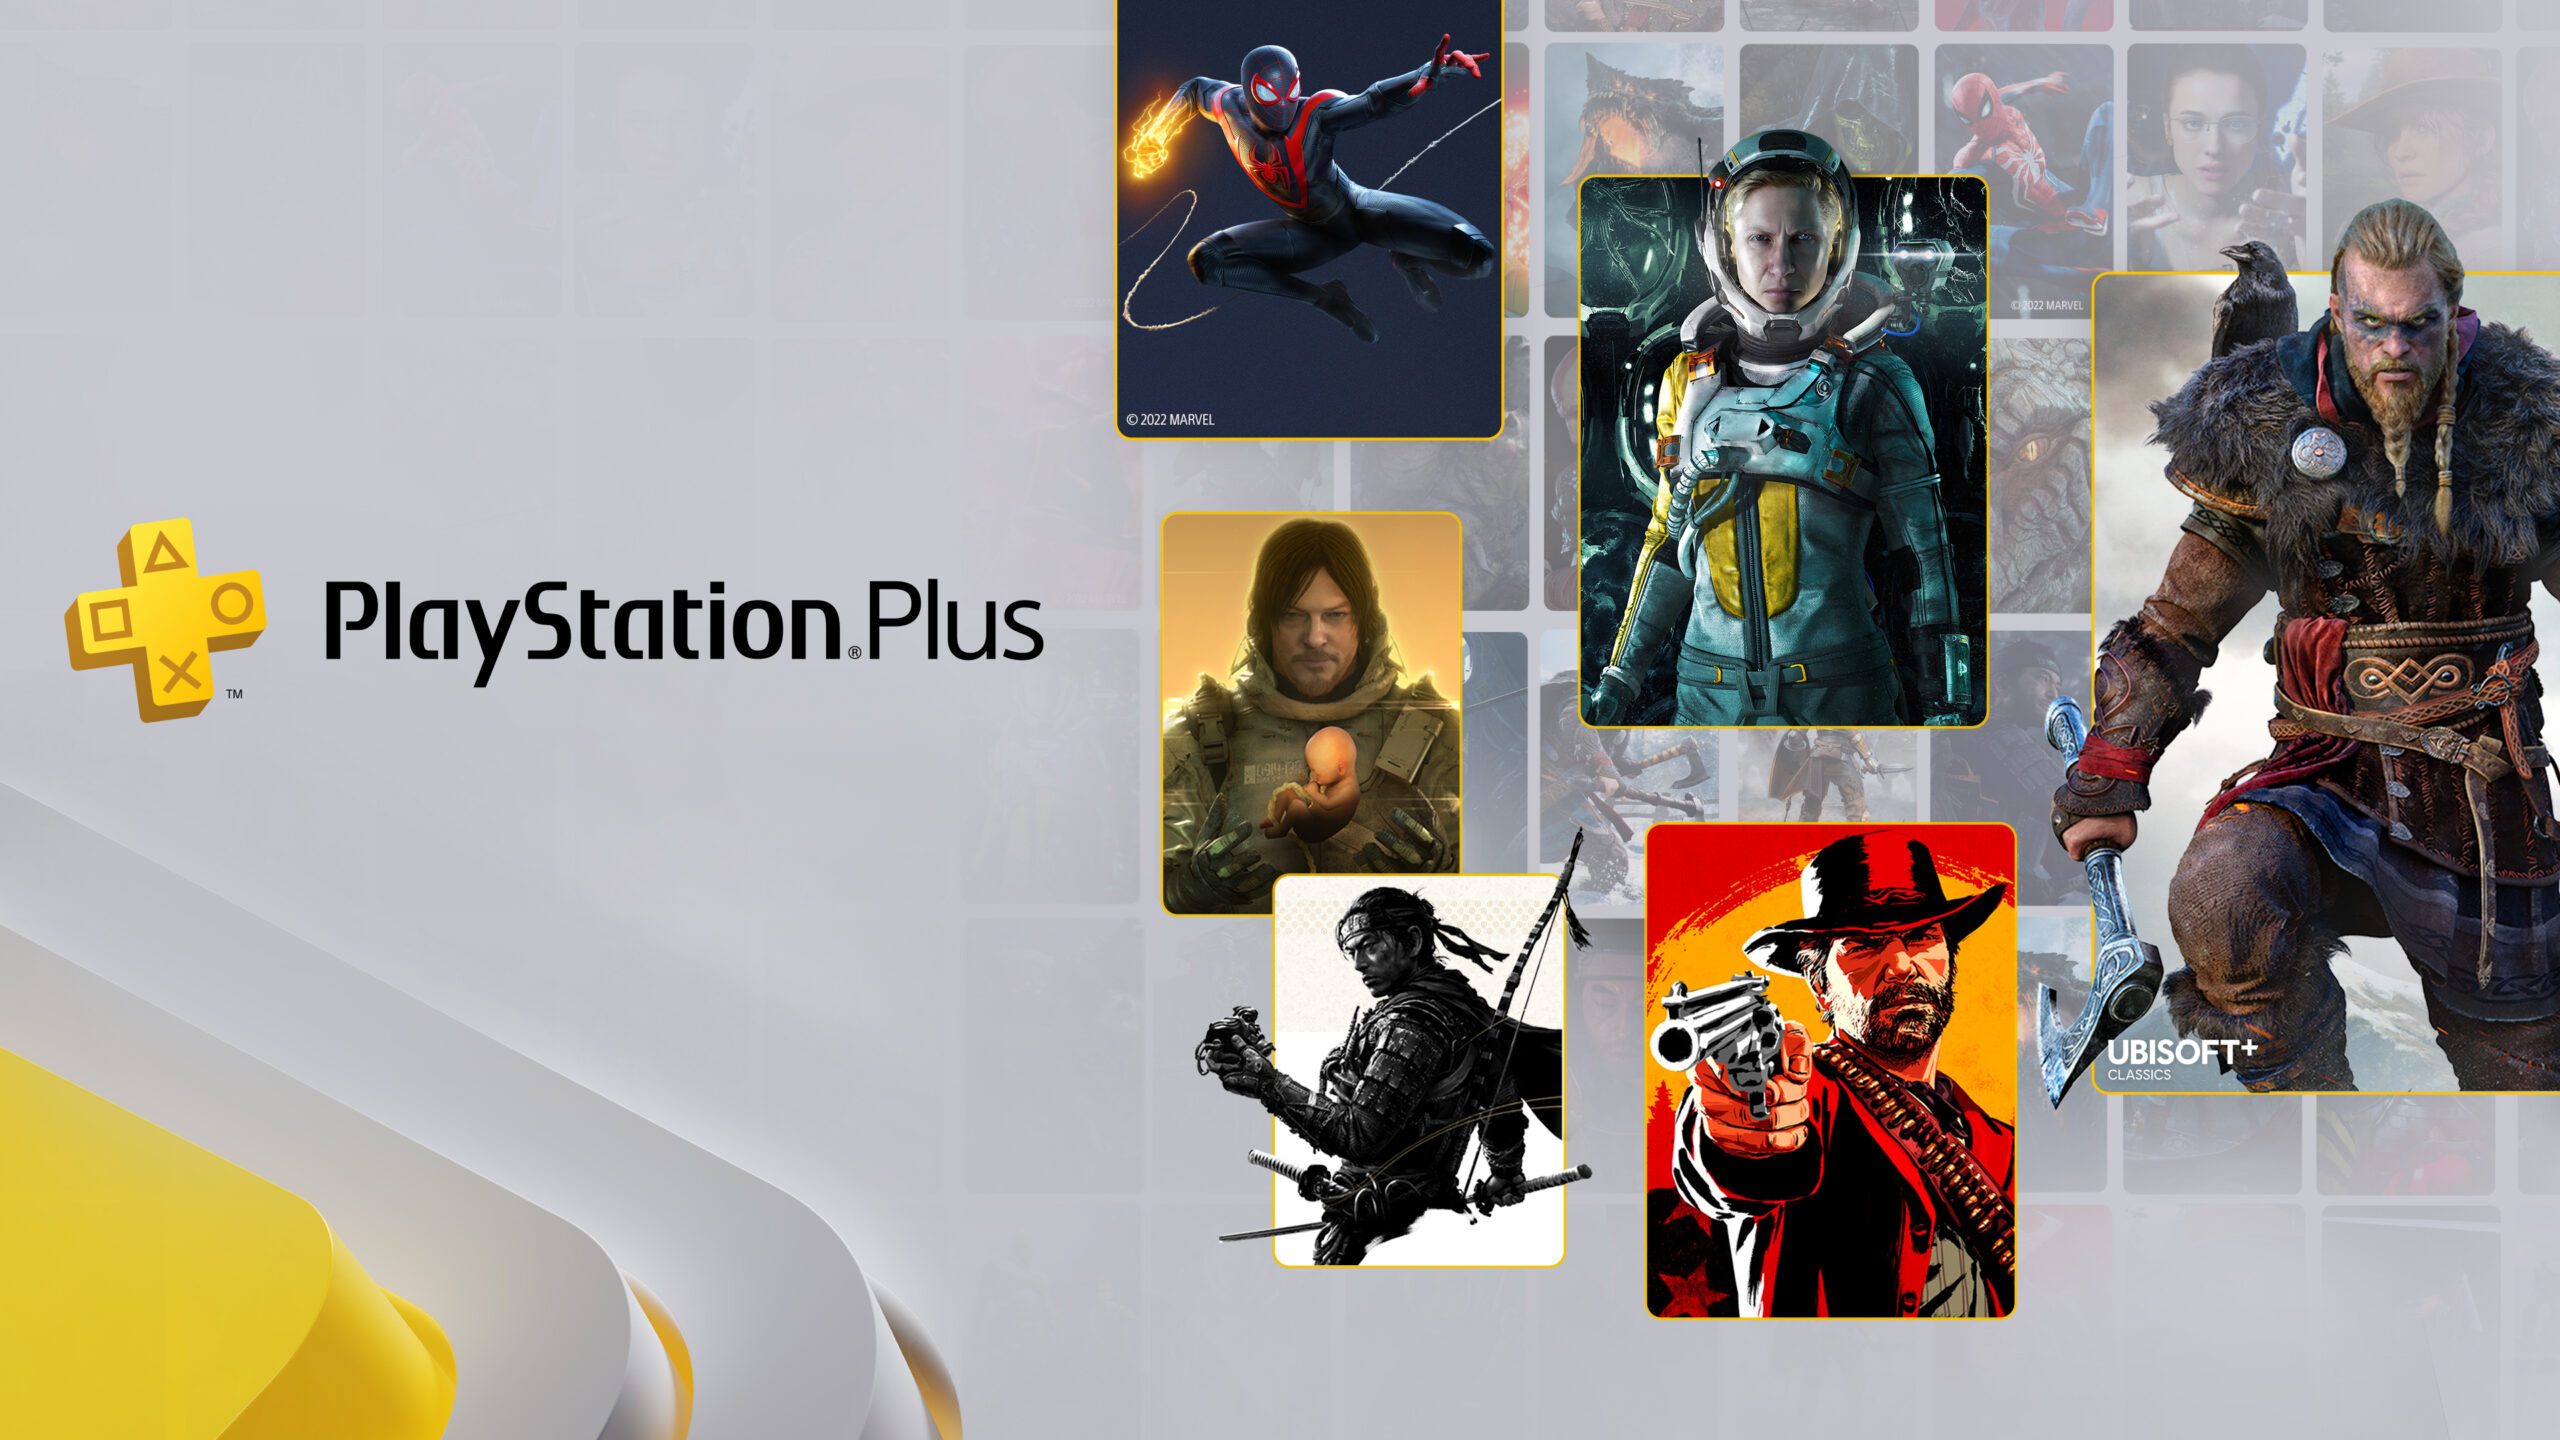 Jogos grátis no Playstation Plus para Junho de 2022